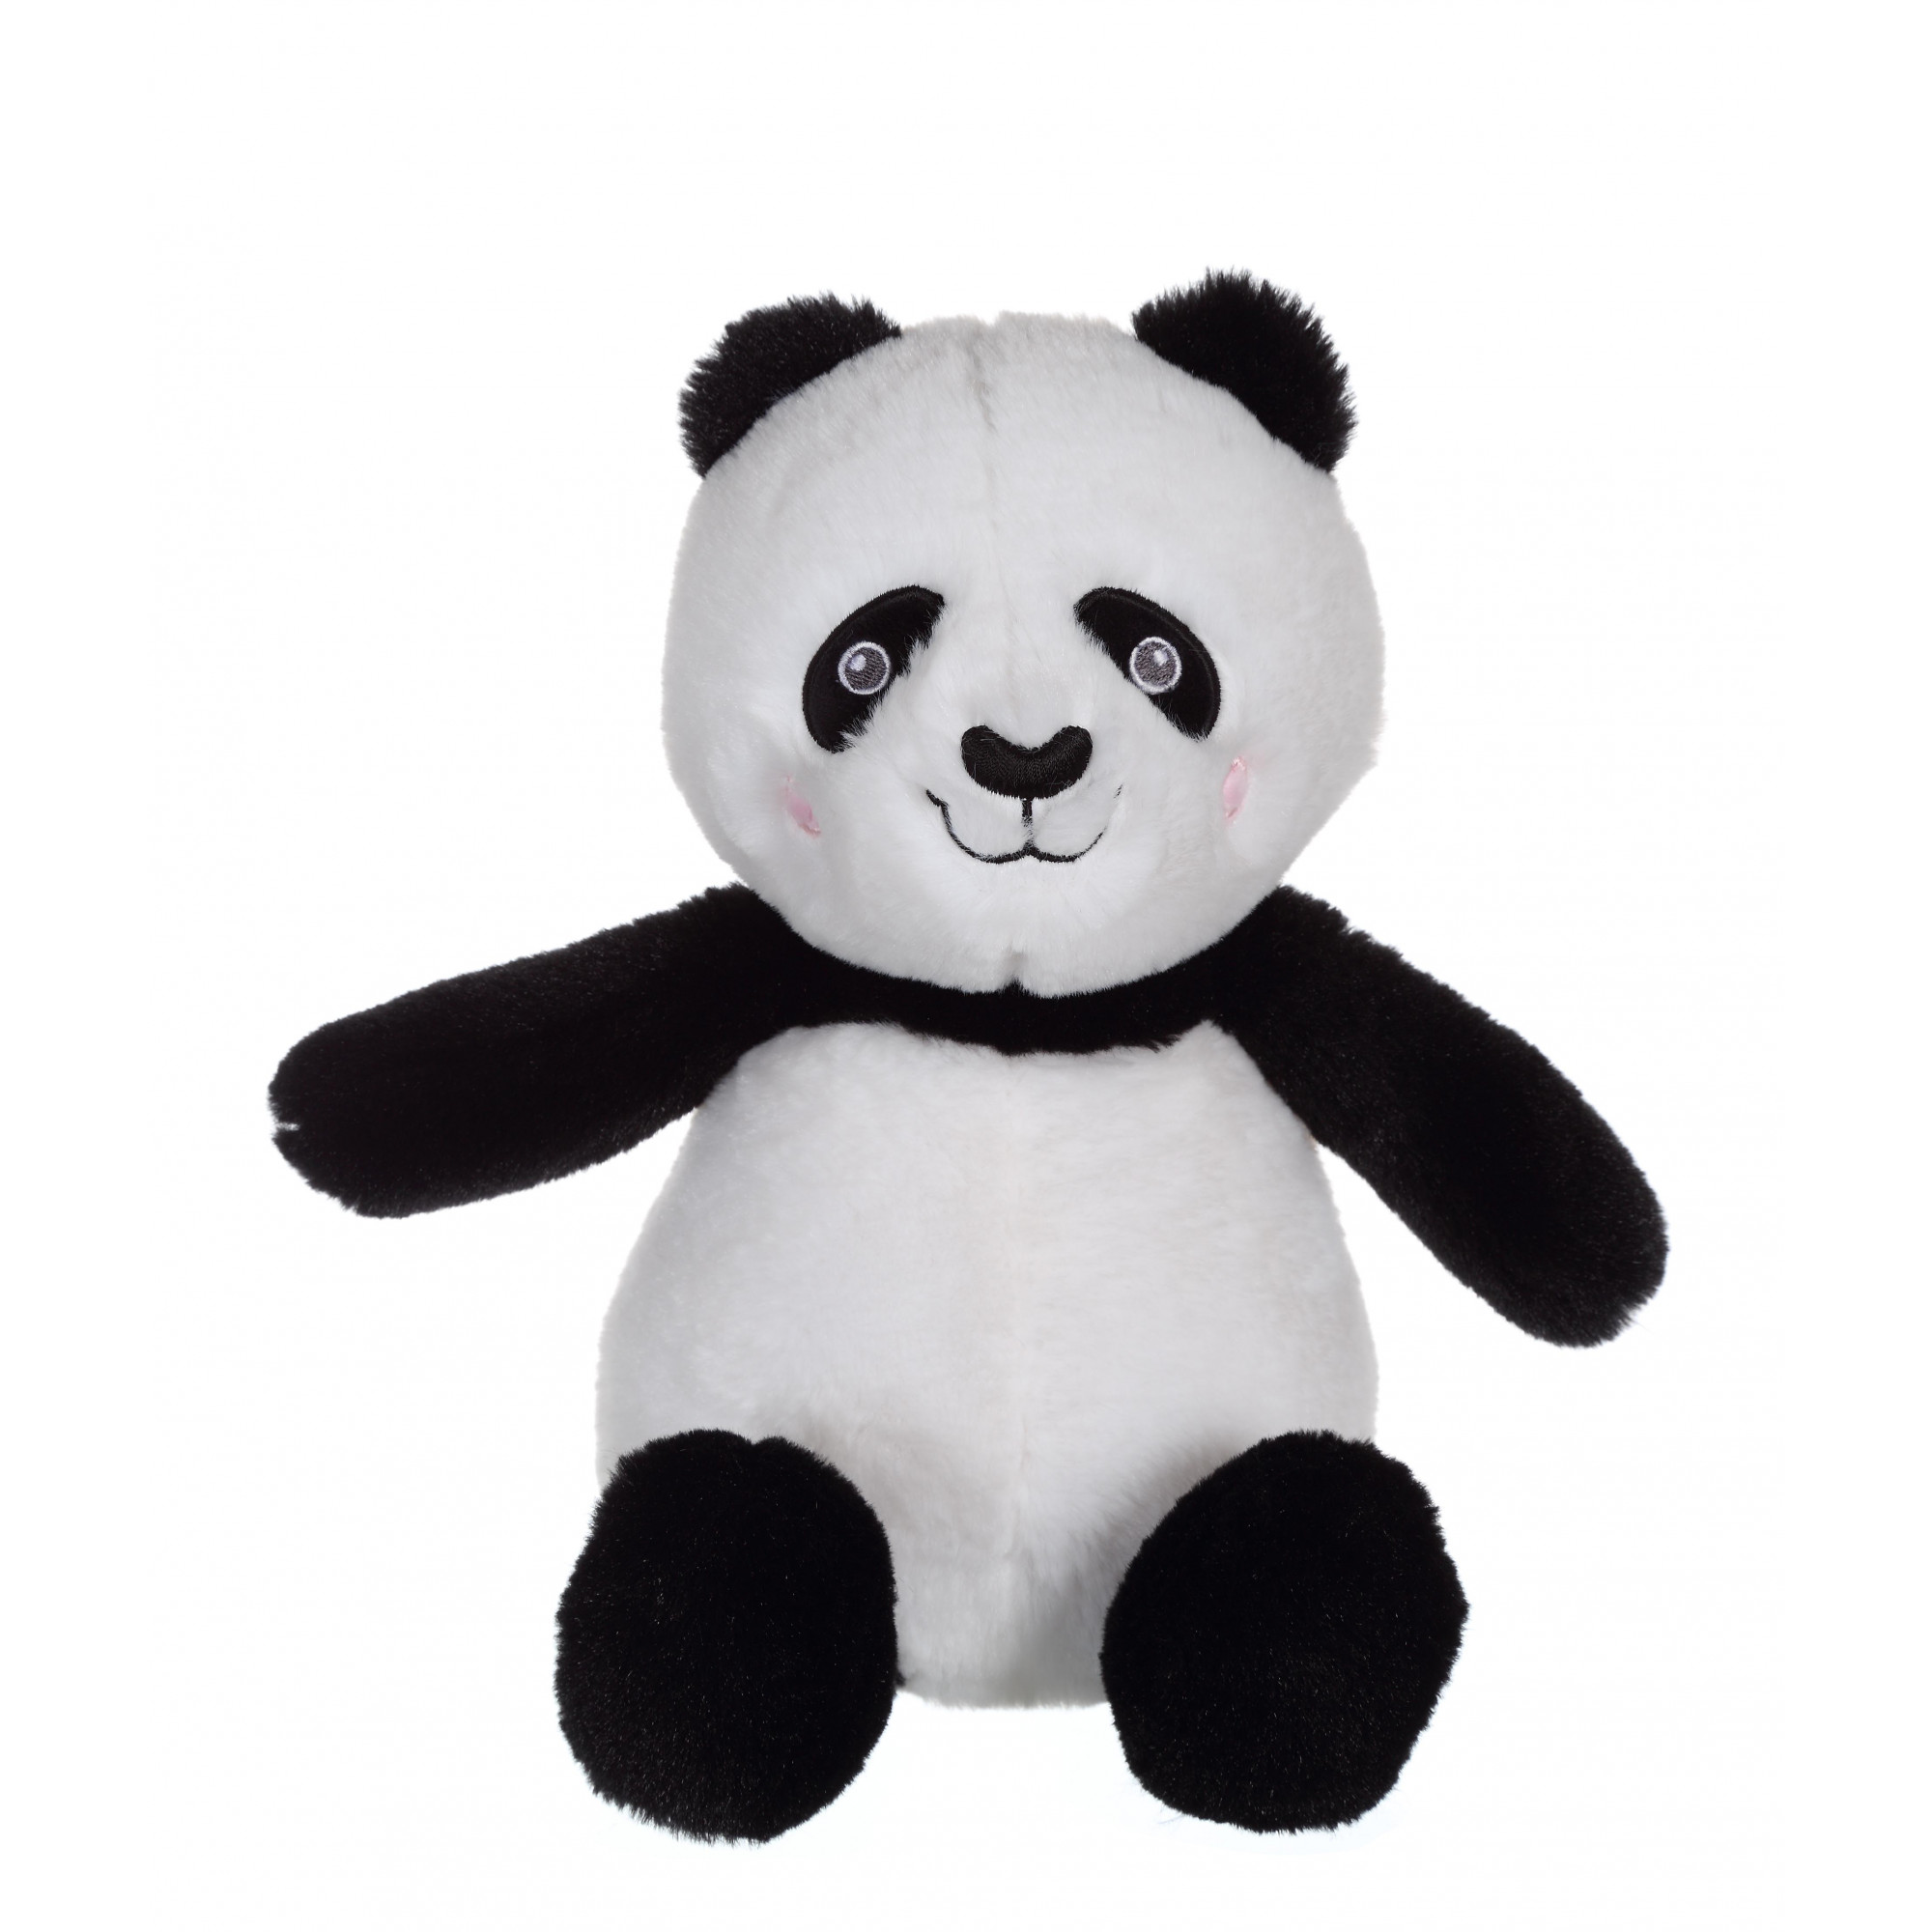 Econimals - Panda 24 cm